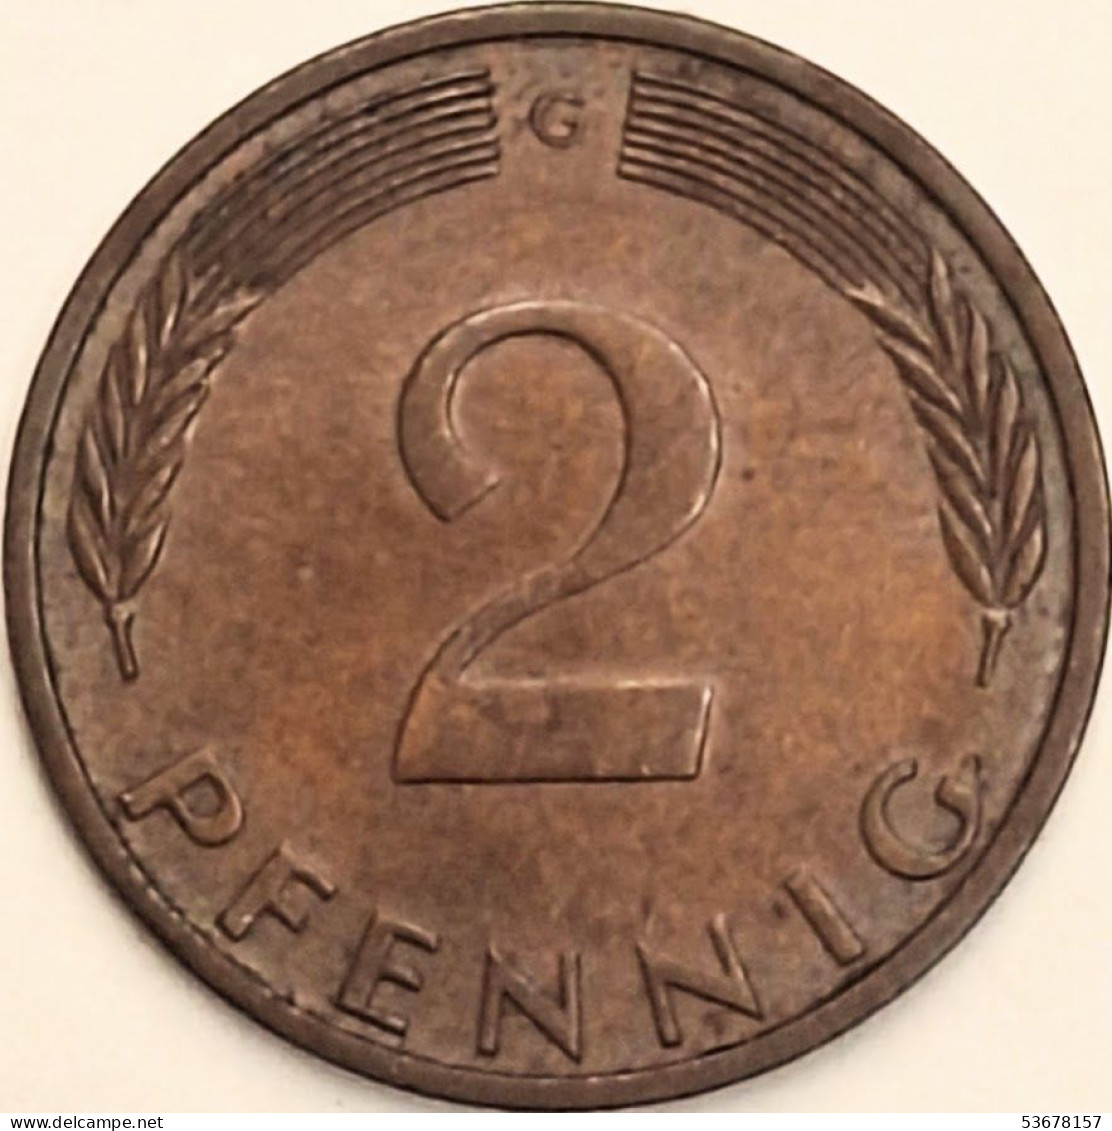 Germany Federal Republic - 2 Pfennig 1976 G, KM# 106a (#4529) - 2 Pfennig